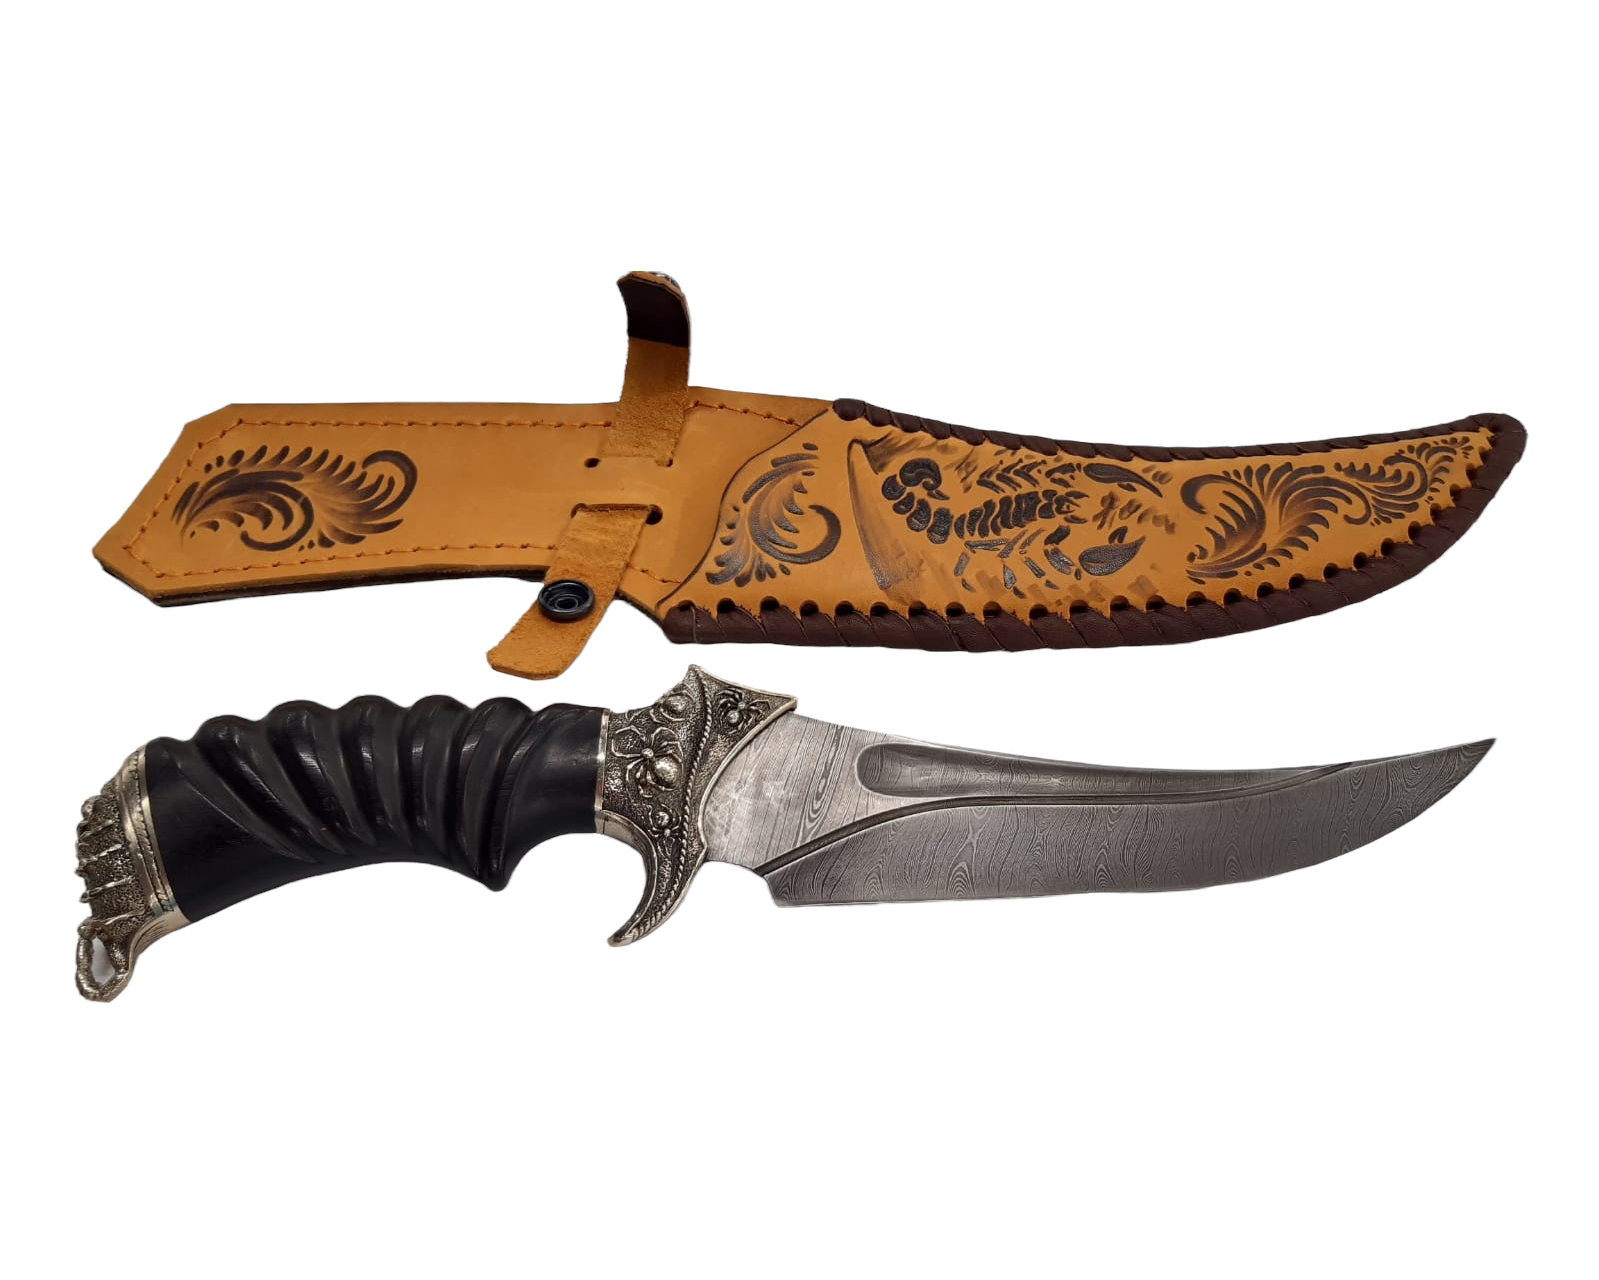 Нож ИП Семин Корсар дамасская сталь литье скорпион ценные породы дерева - фото 1